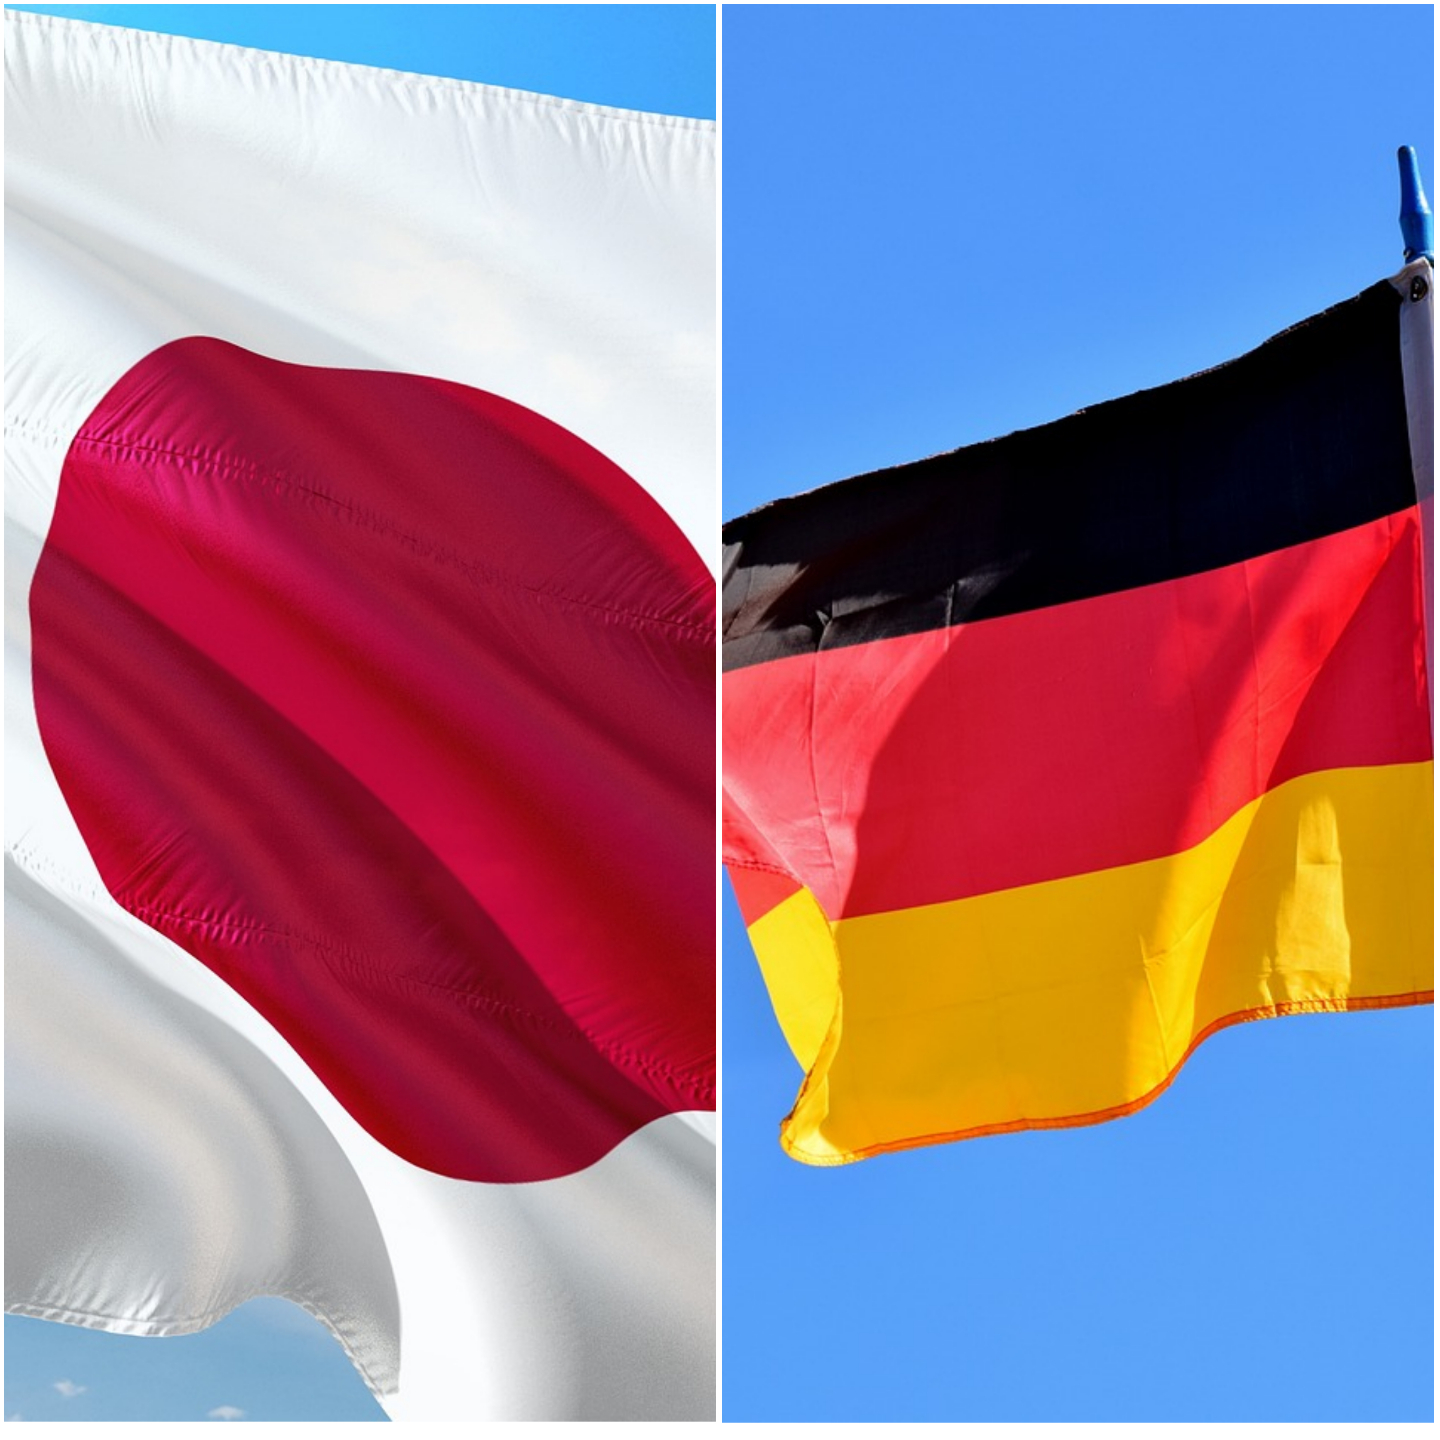 Japanski i nemački ministri planiraju da održe razgovore